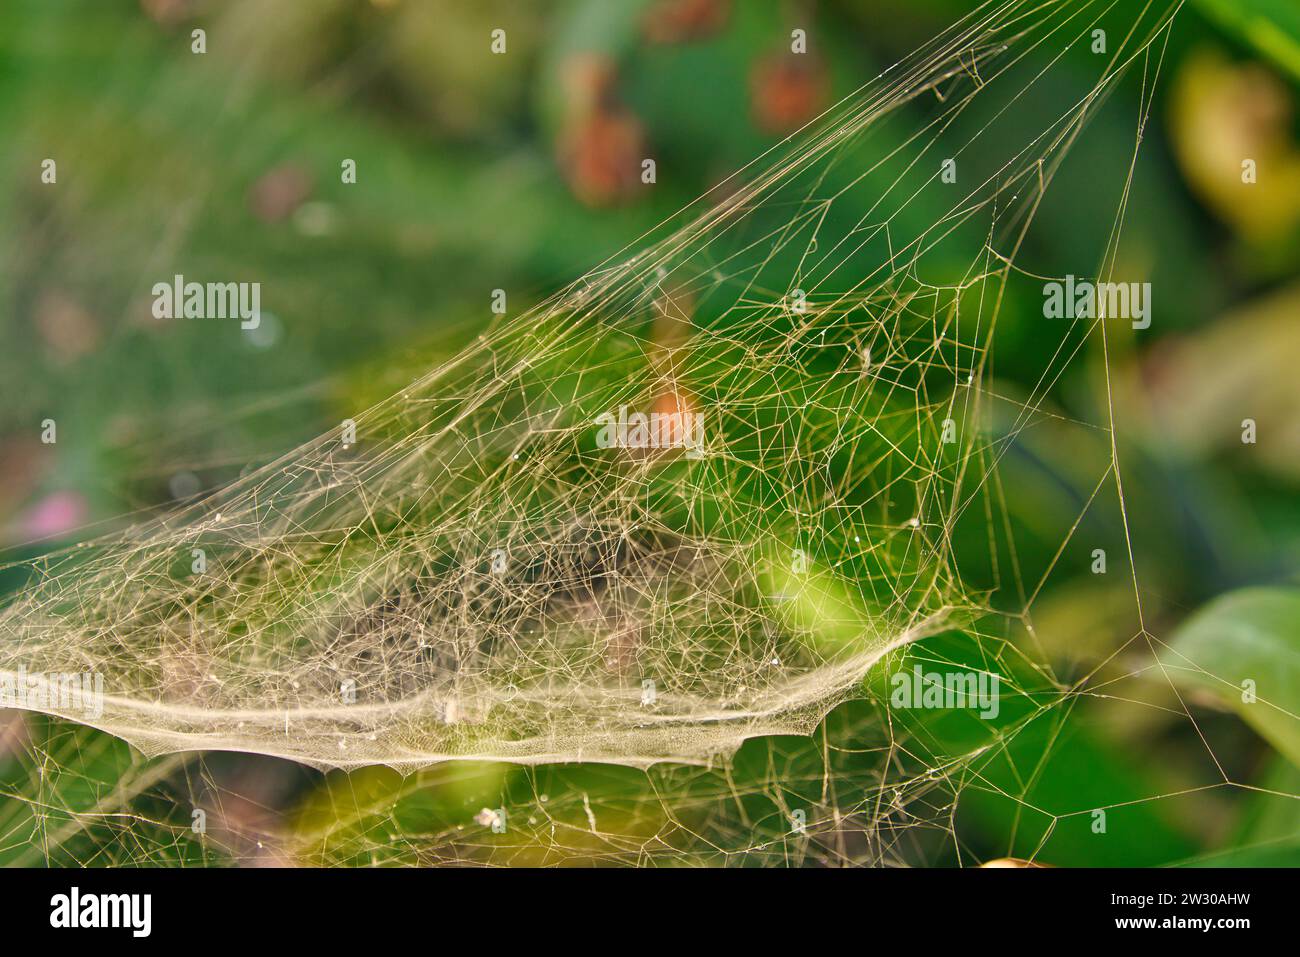 Ein Nahaufnahme-Foto von Spinnennetz auf einer schönen grünen Pflanze. Die komplizierte Umarmung der Natur: Grüne Pflanzen mit zarten Spinnweben. Stockfoto